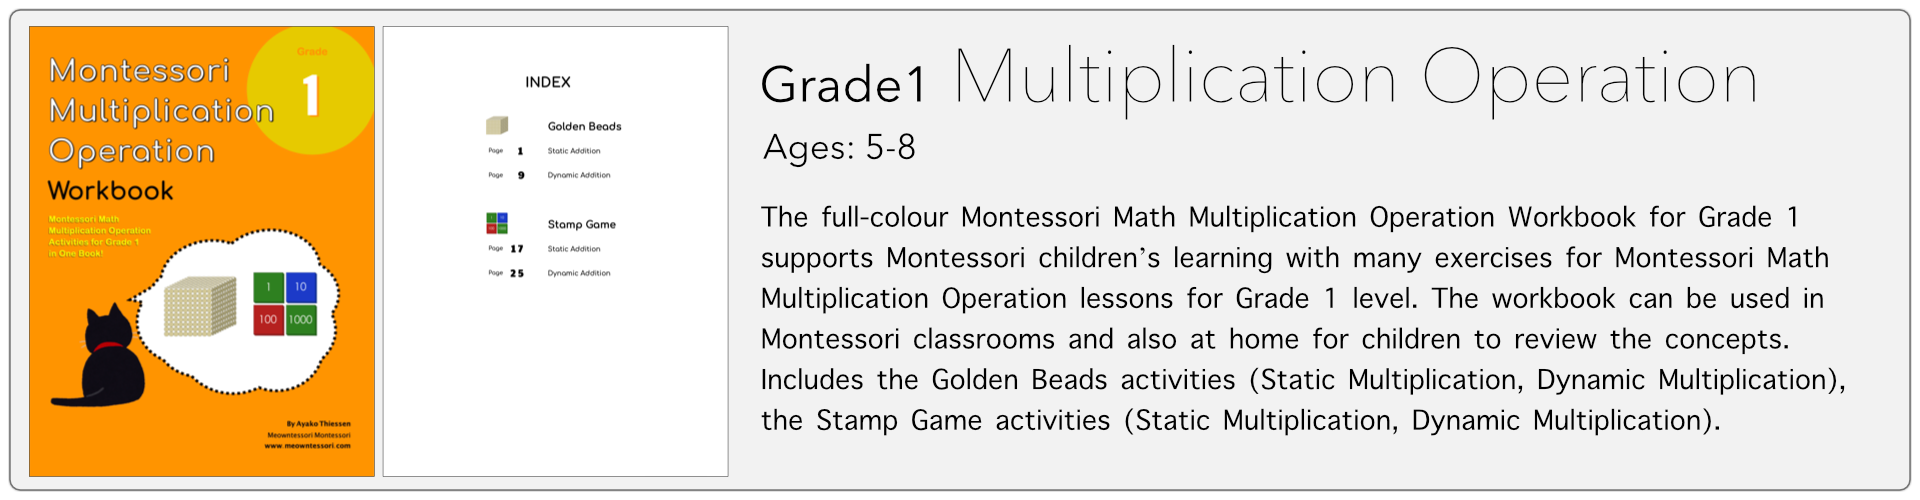 grade1 multiplication operation